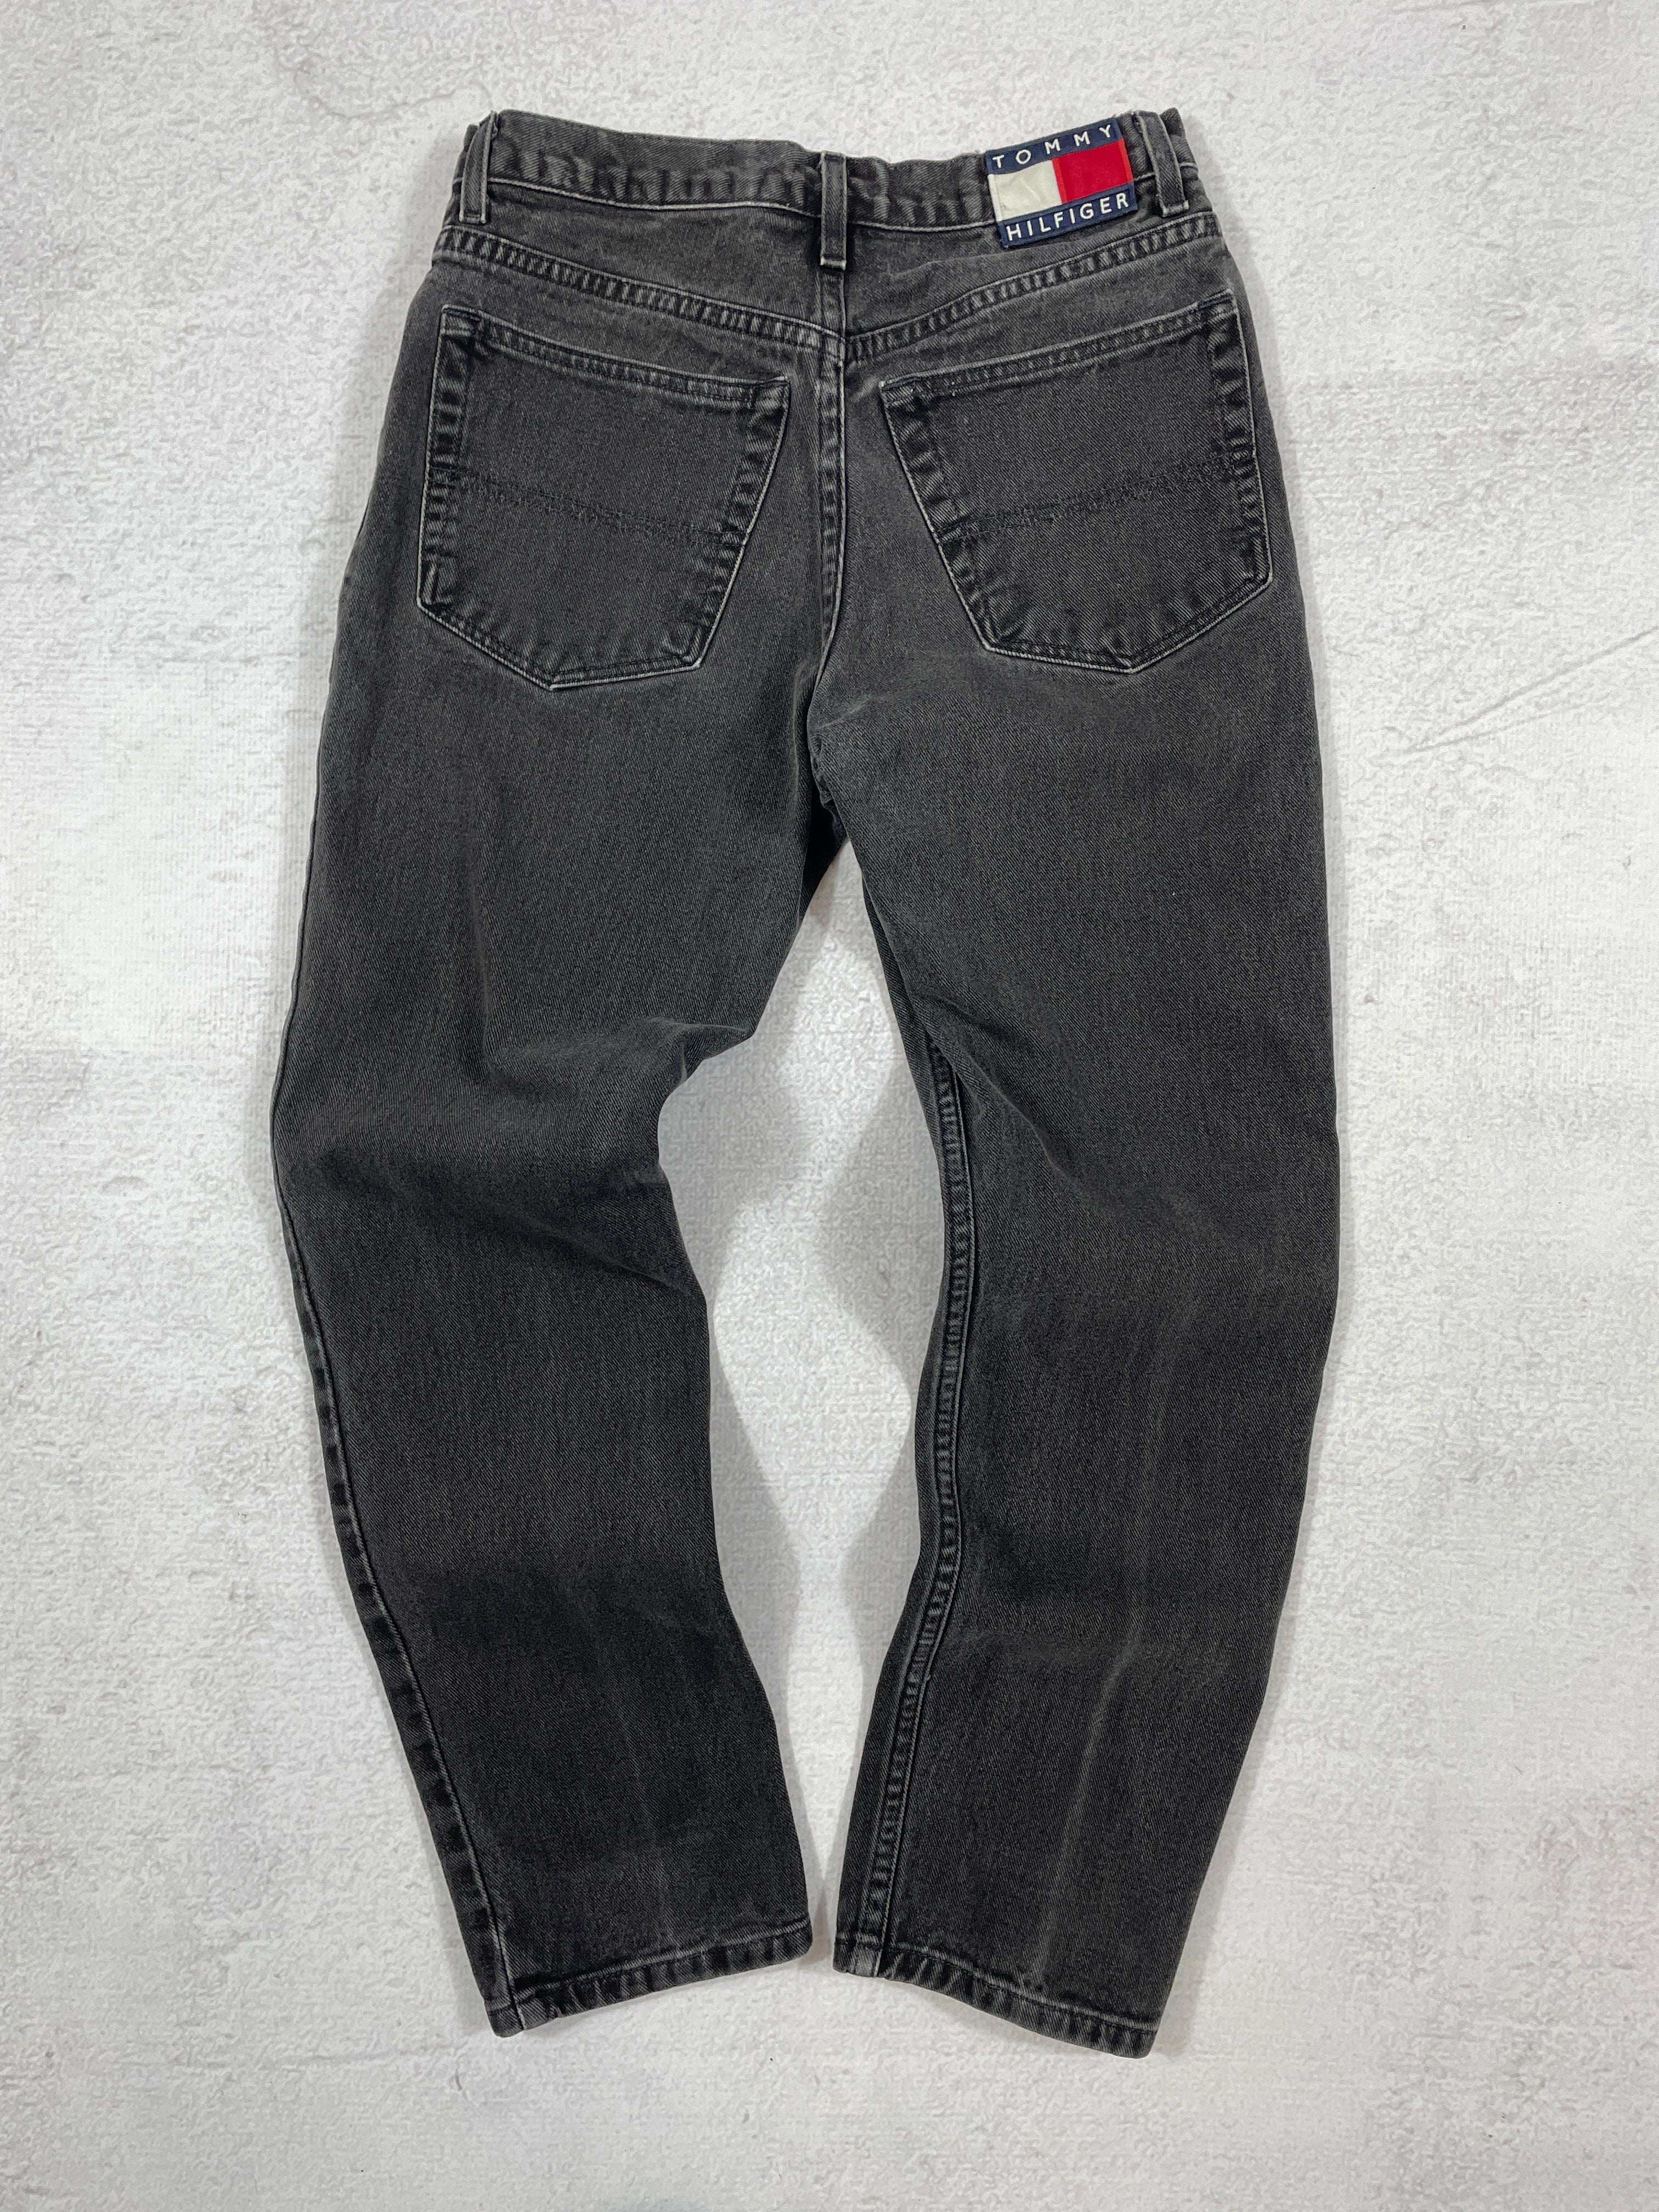 Vintage Tommy Hilfiger Jeans - Women's 29Wx30L